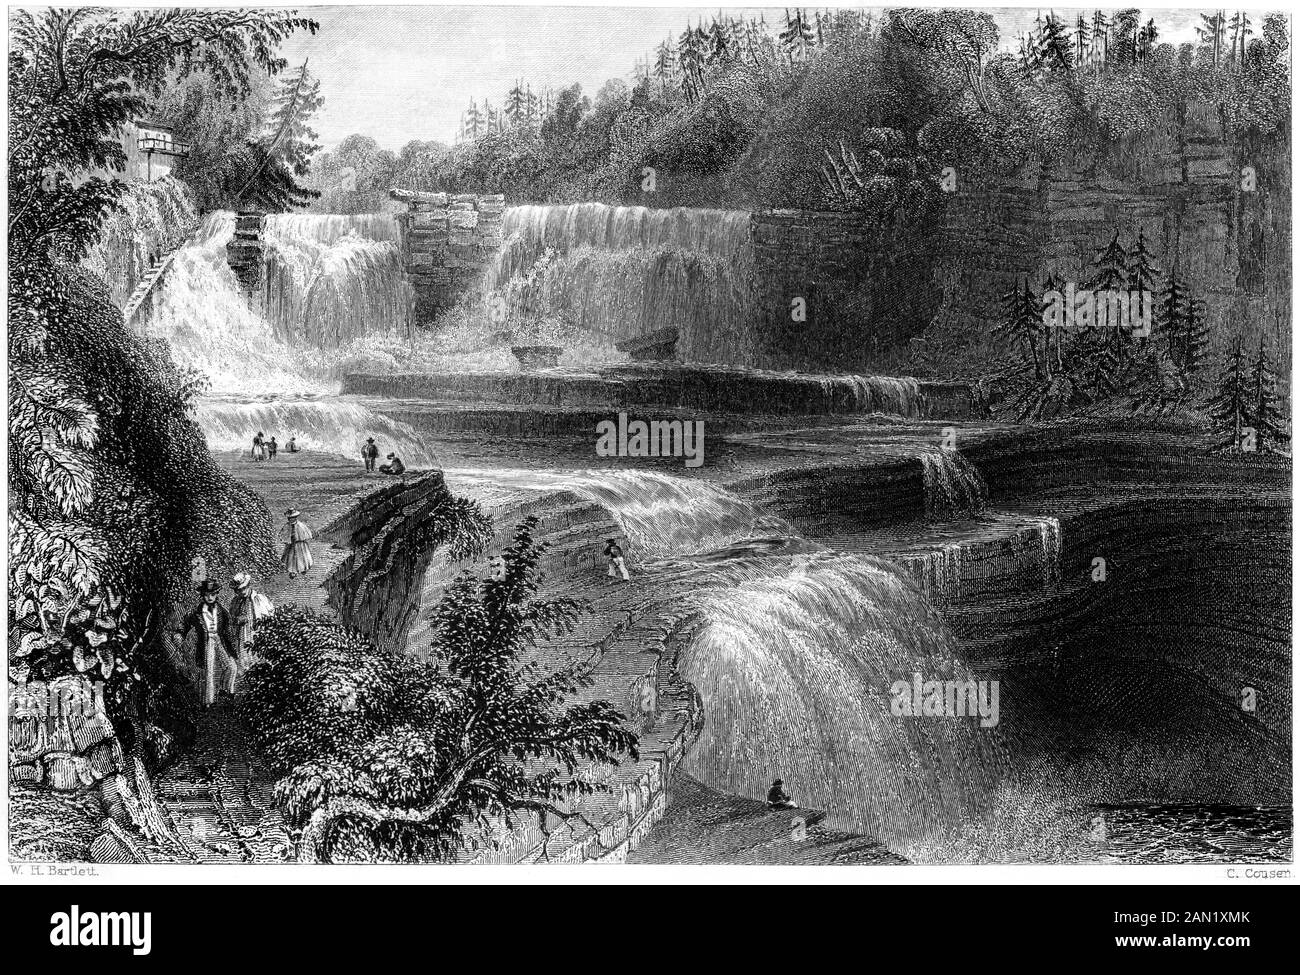 Ein Kupferstich von Trenton High Fällt bei hoher Auflösung gescannt. aus einem Buch im Jahre 1840 gedruckt. Glaubten copyright frei. Stockfoto